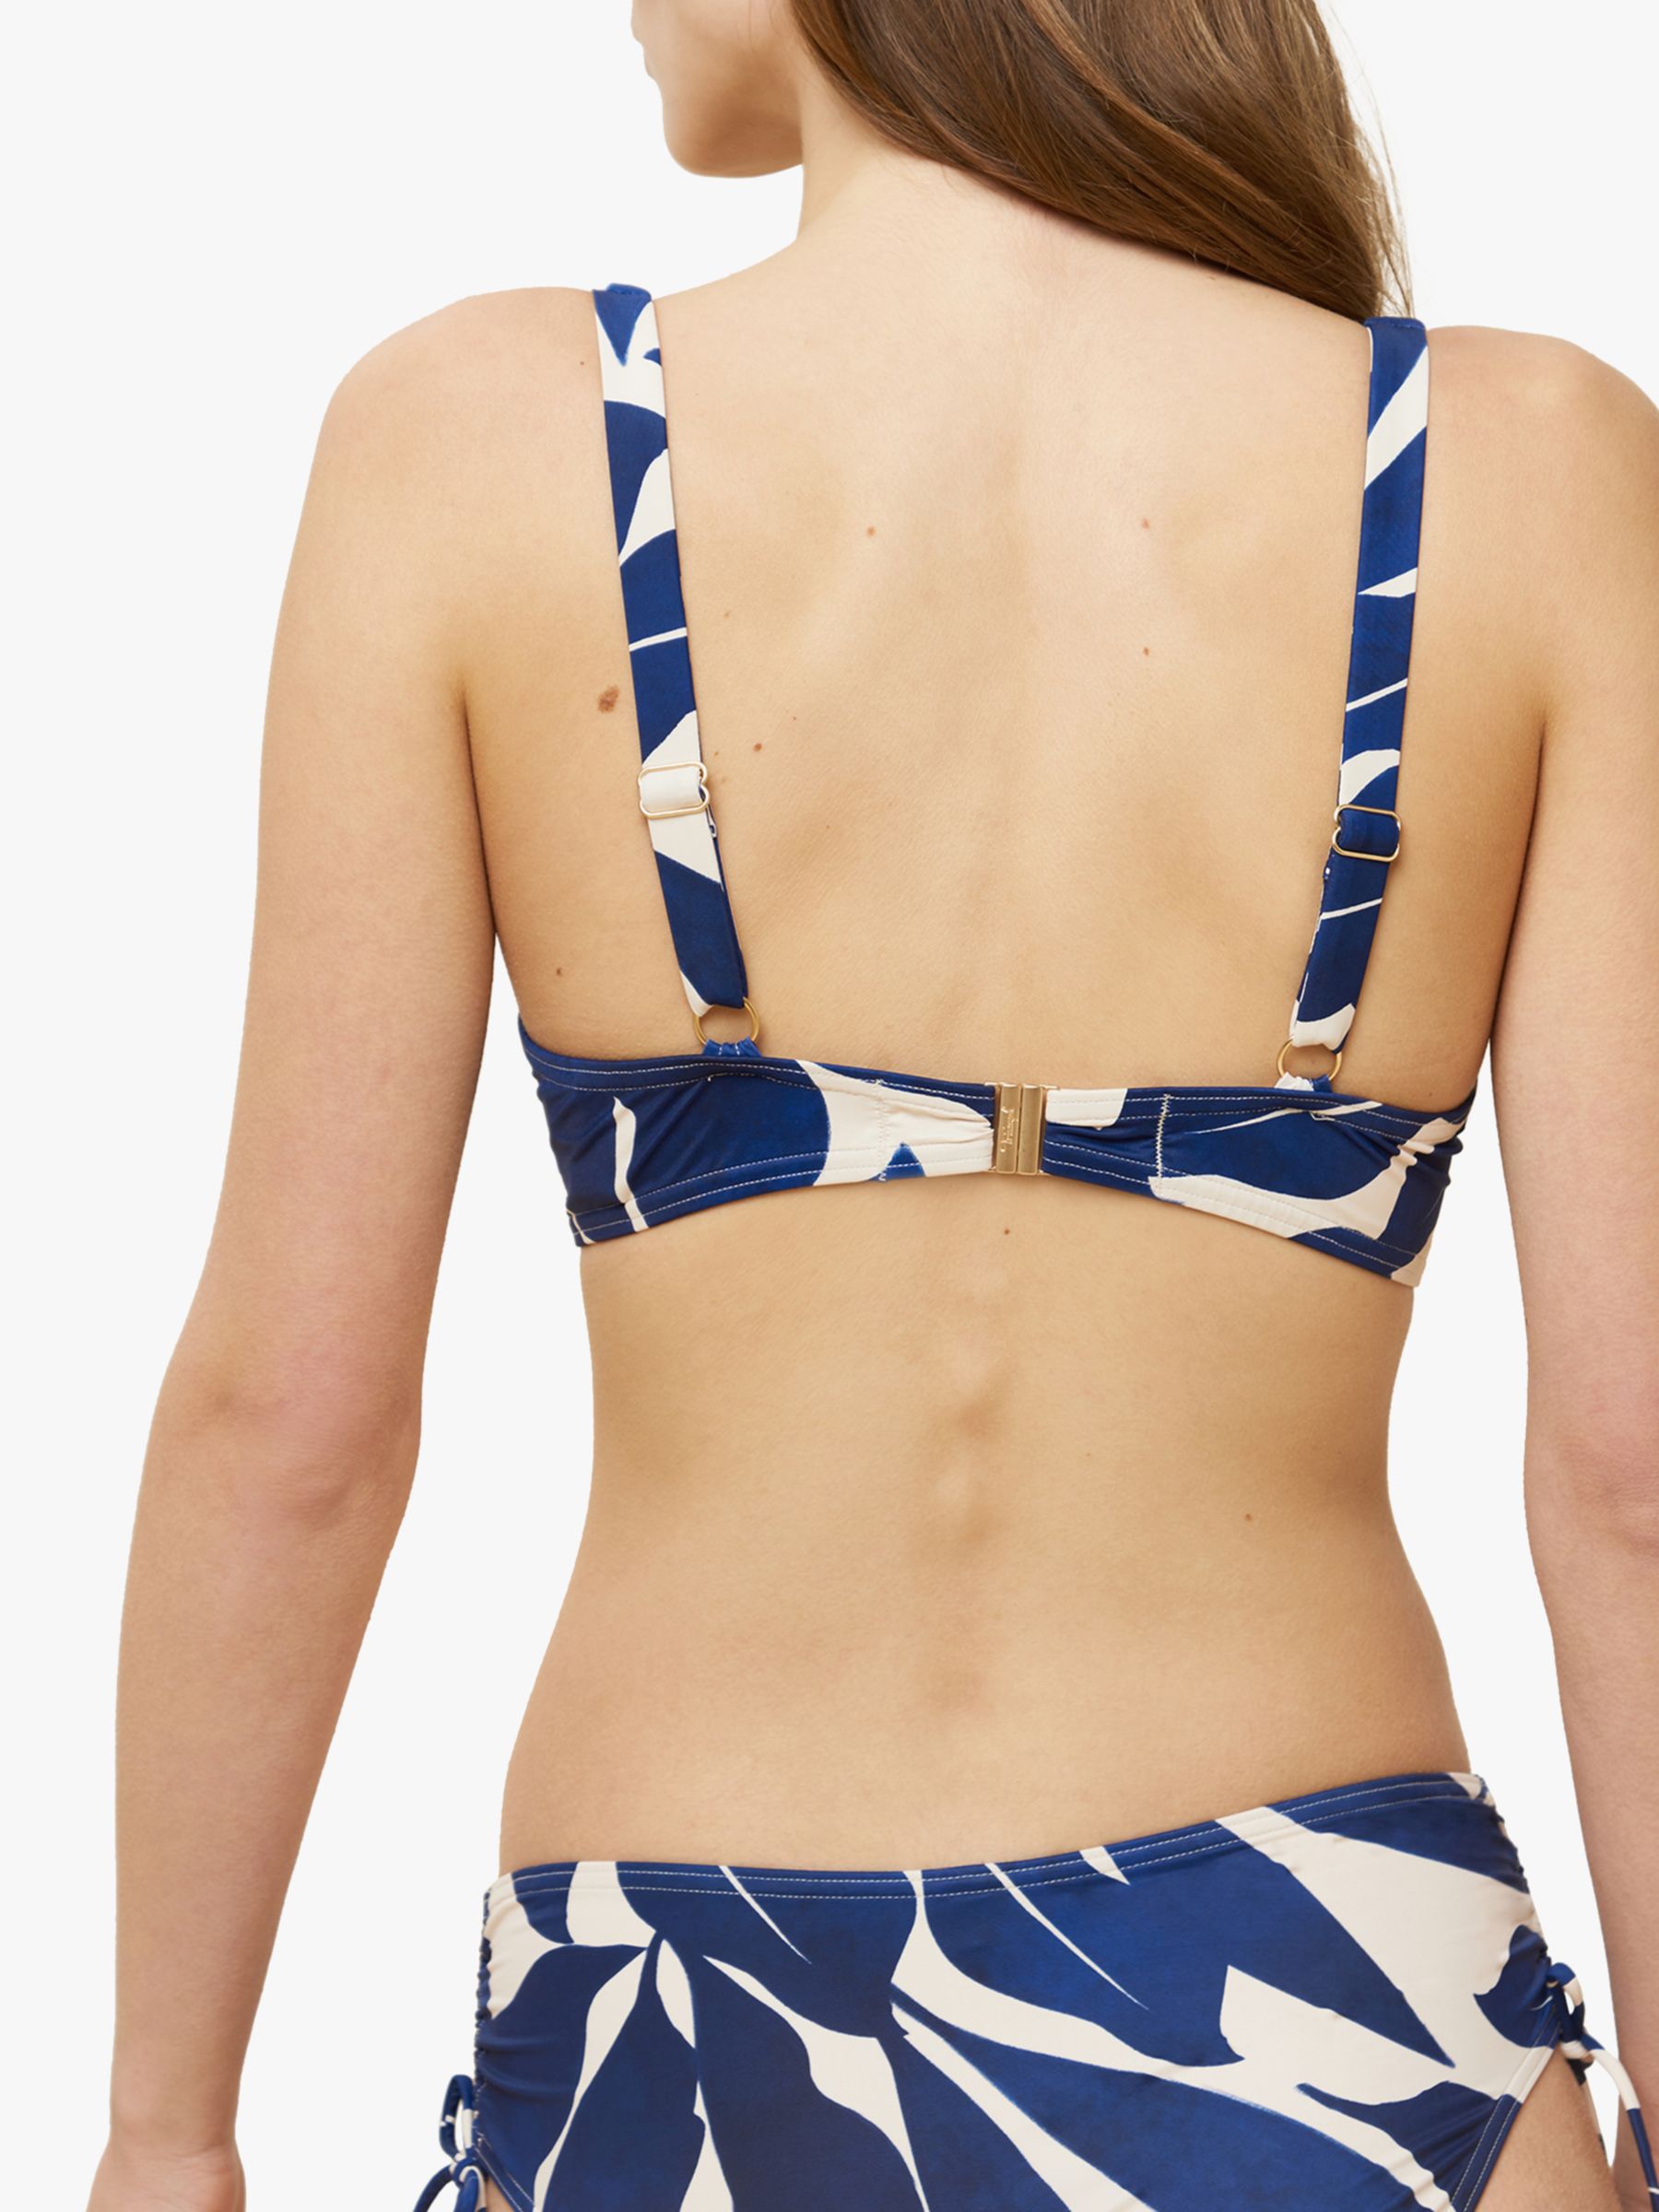 Triumph Summer Allure Wired Bikini Top, Blue, 38D